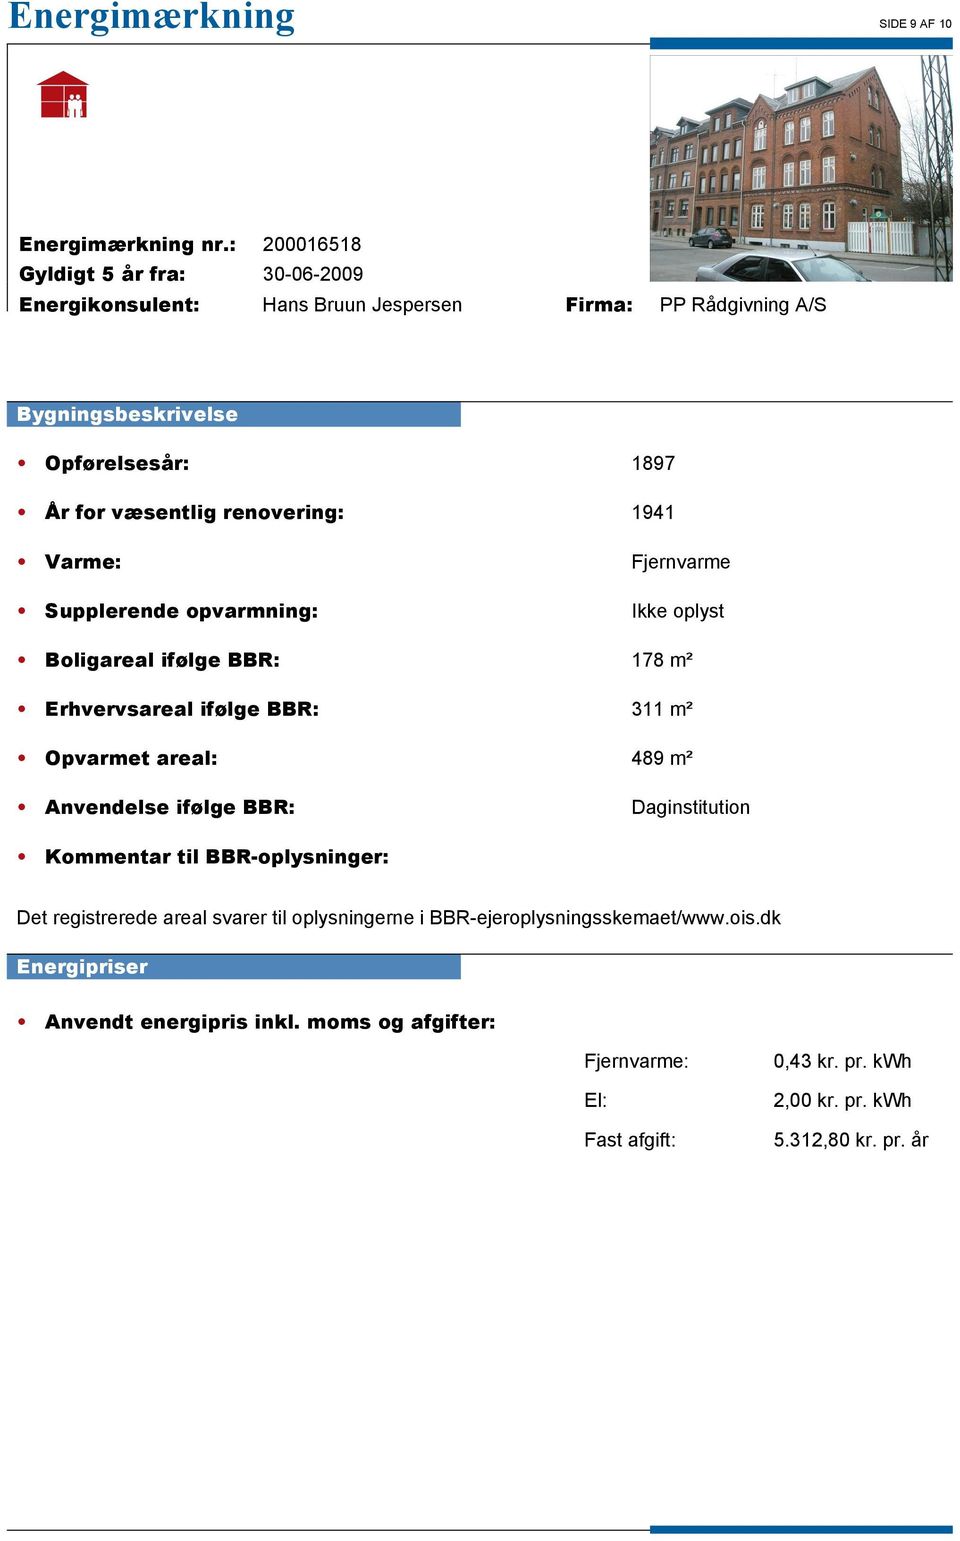 Daginstitution Kommentar til BBR-oplysninger: Det registrerede areal svarer til oplysningerne i BBR-ejeroplysningsskemaet/www.ois.